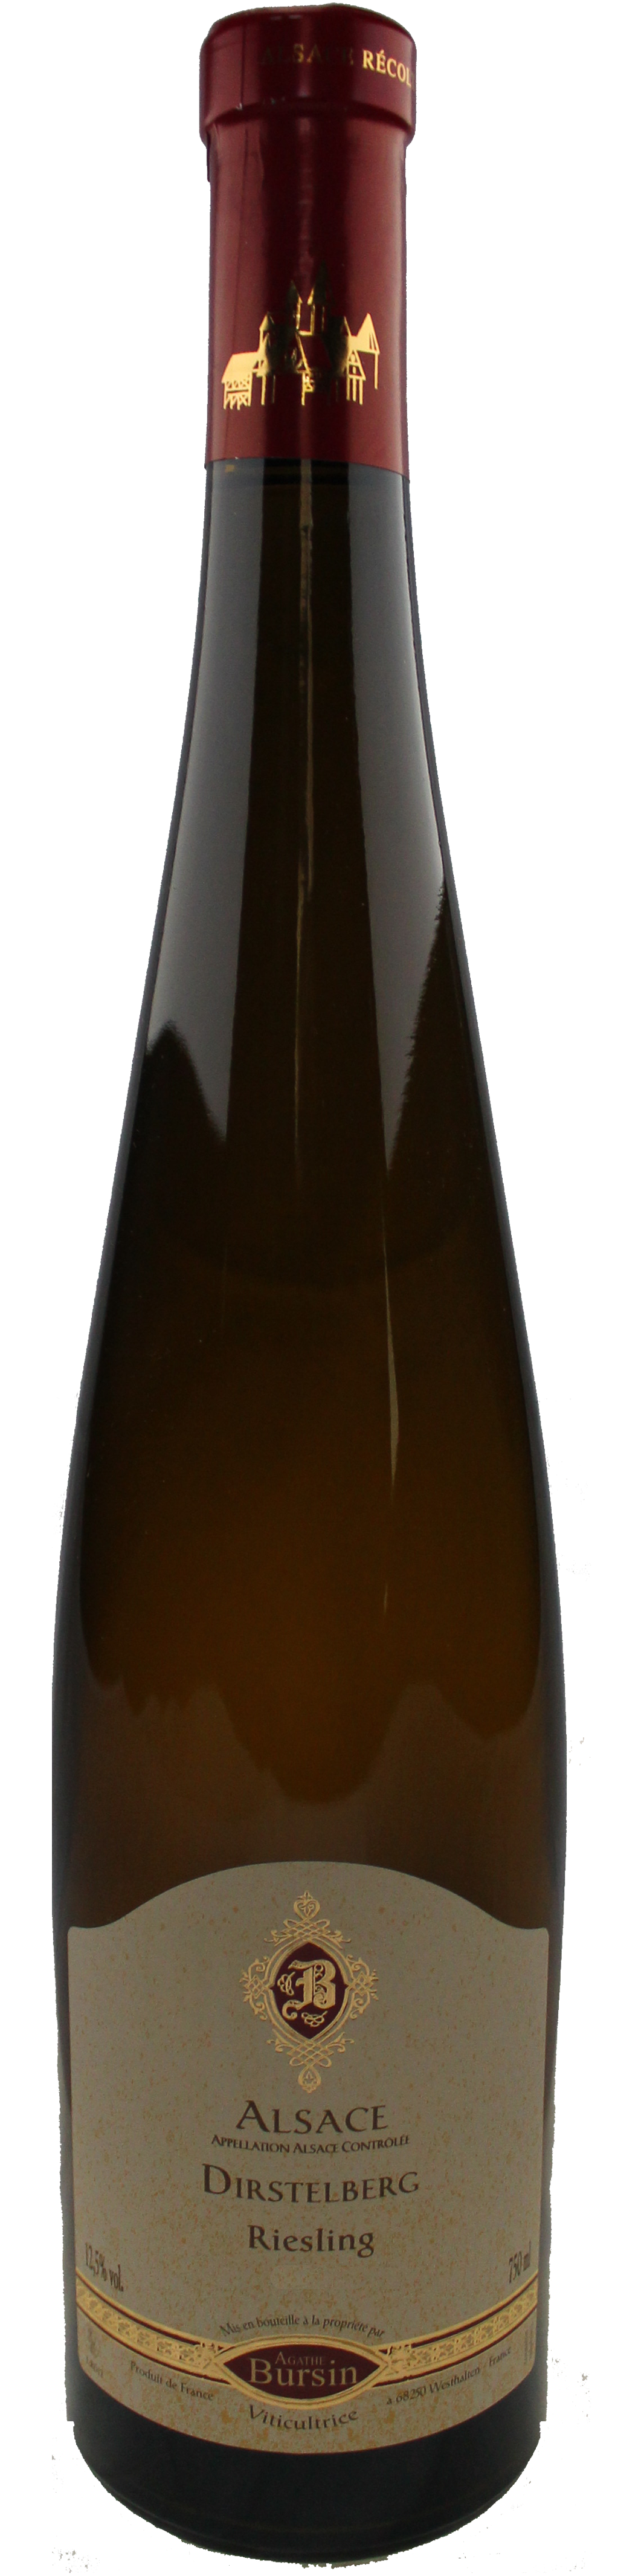 Bottle shot of 2013 Riesling Dirstelberg